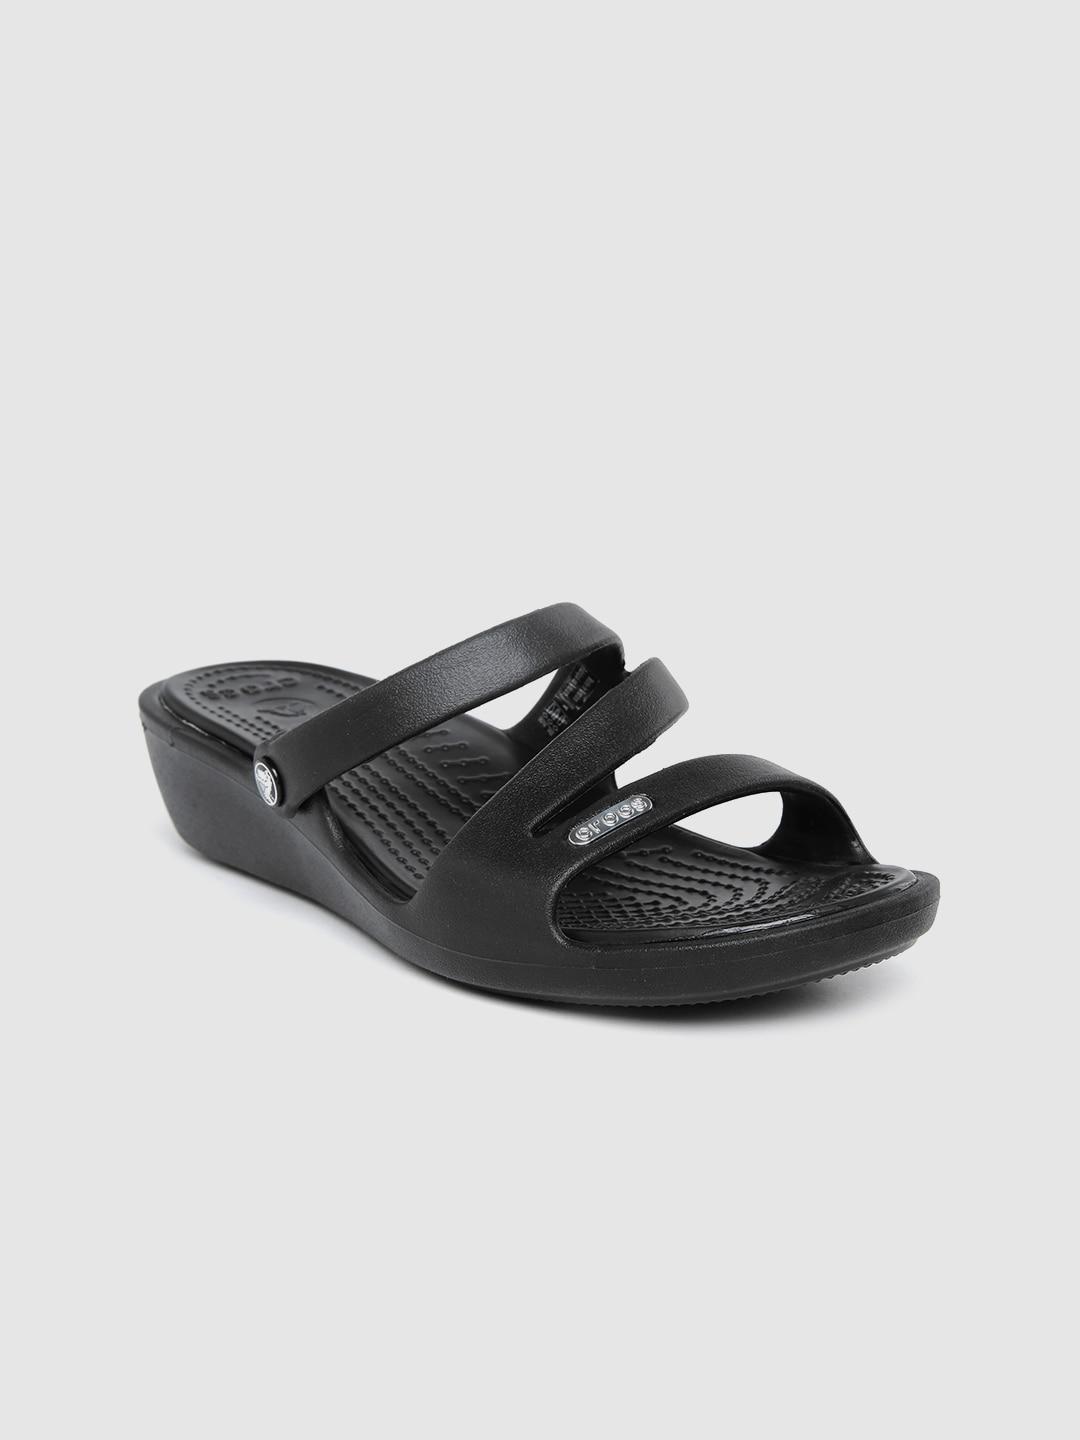 crocs-patricia--women-black-solid-comfort-heels